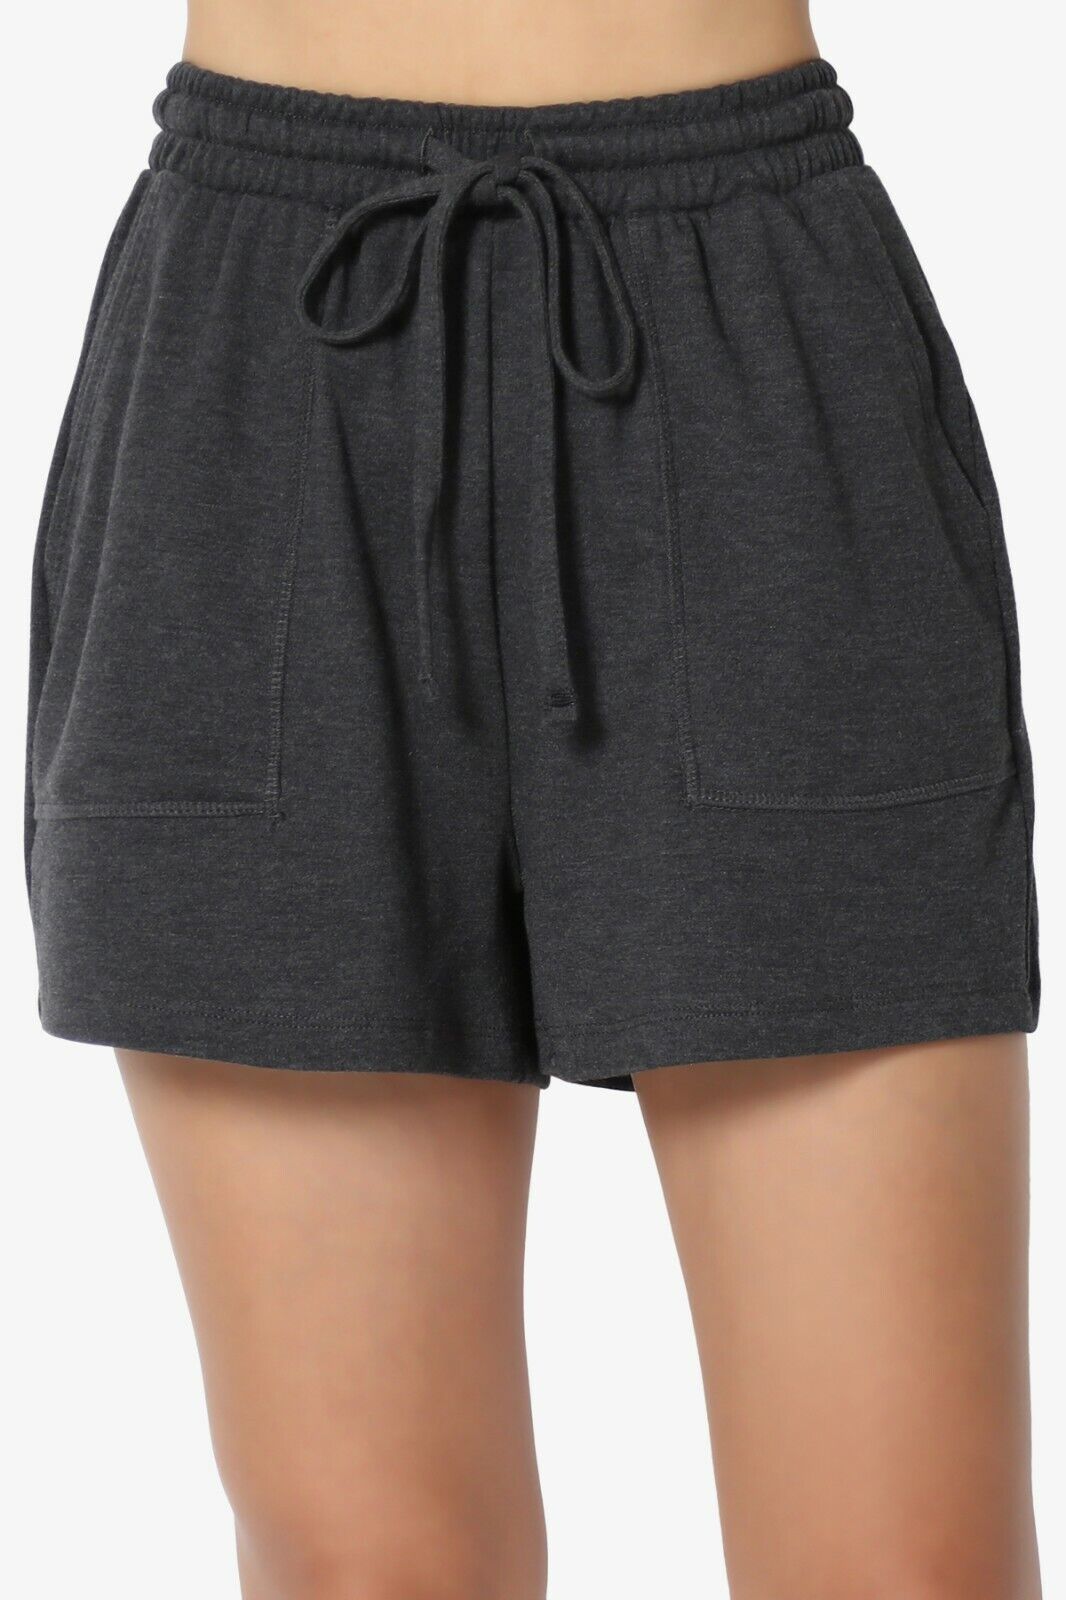 ZENANA Cotton Drawstring Waist Shorts with Pockets